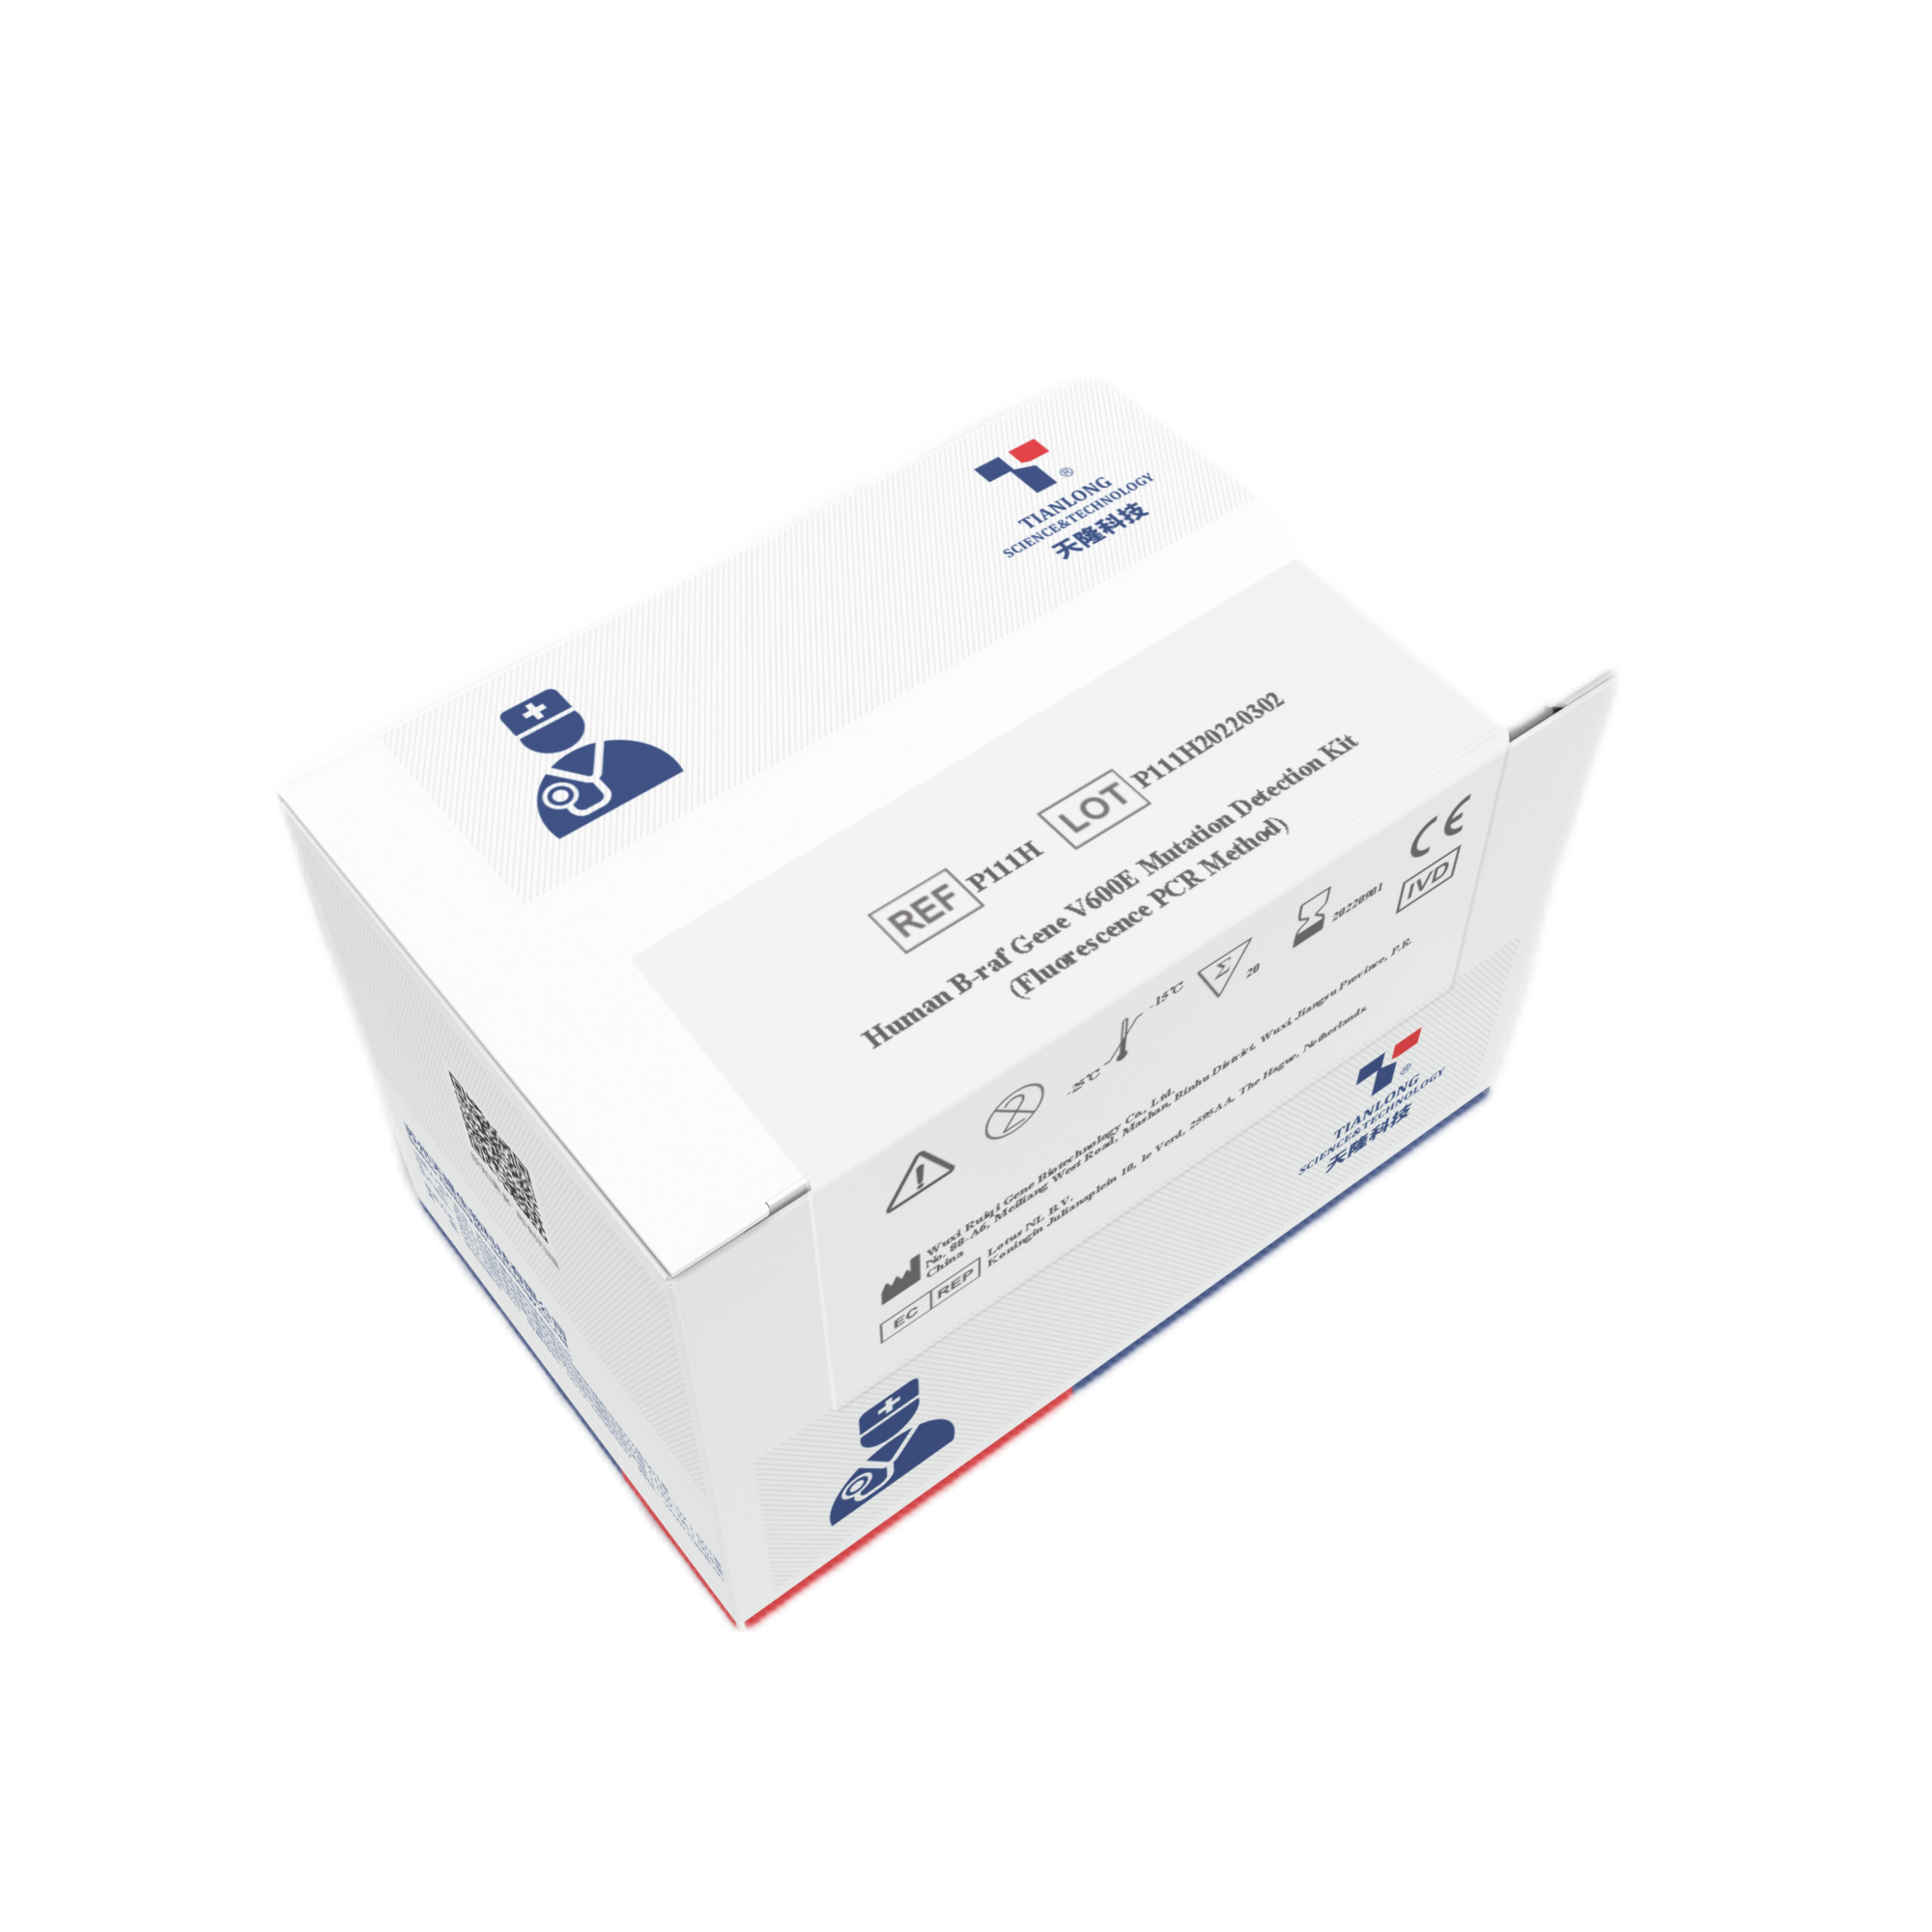 P739H - Kit de détection des acides nucléiques Influenza A/Influenza B/SARS-CoV-2